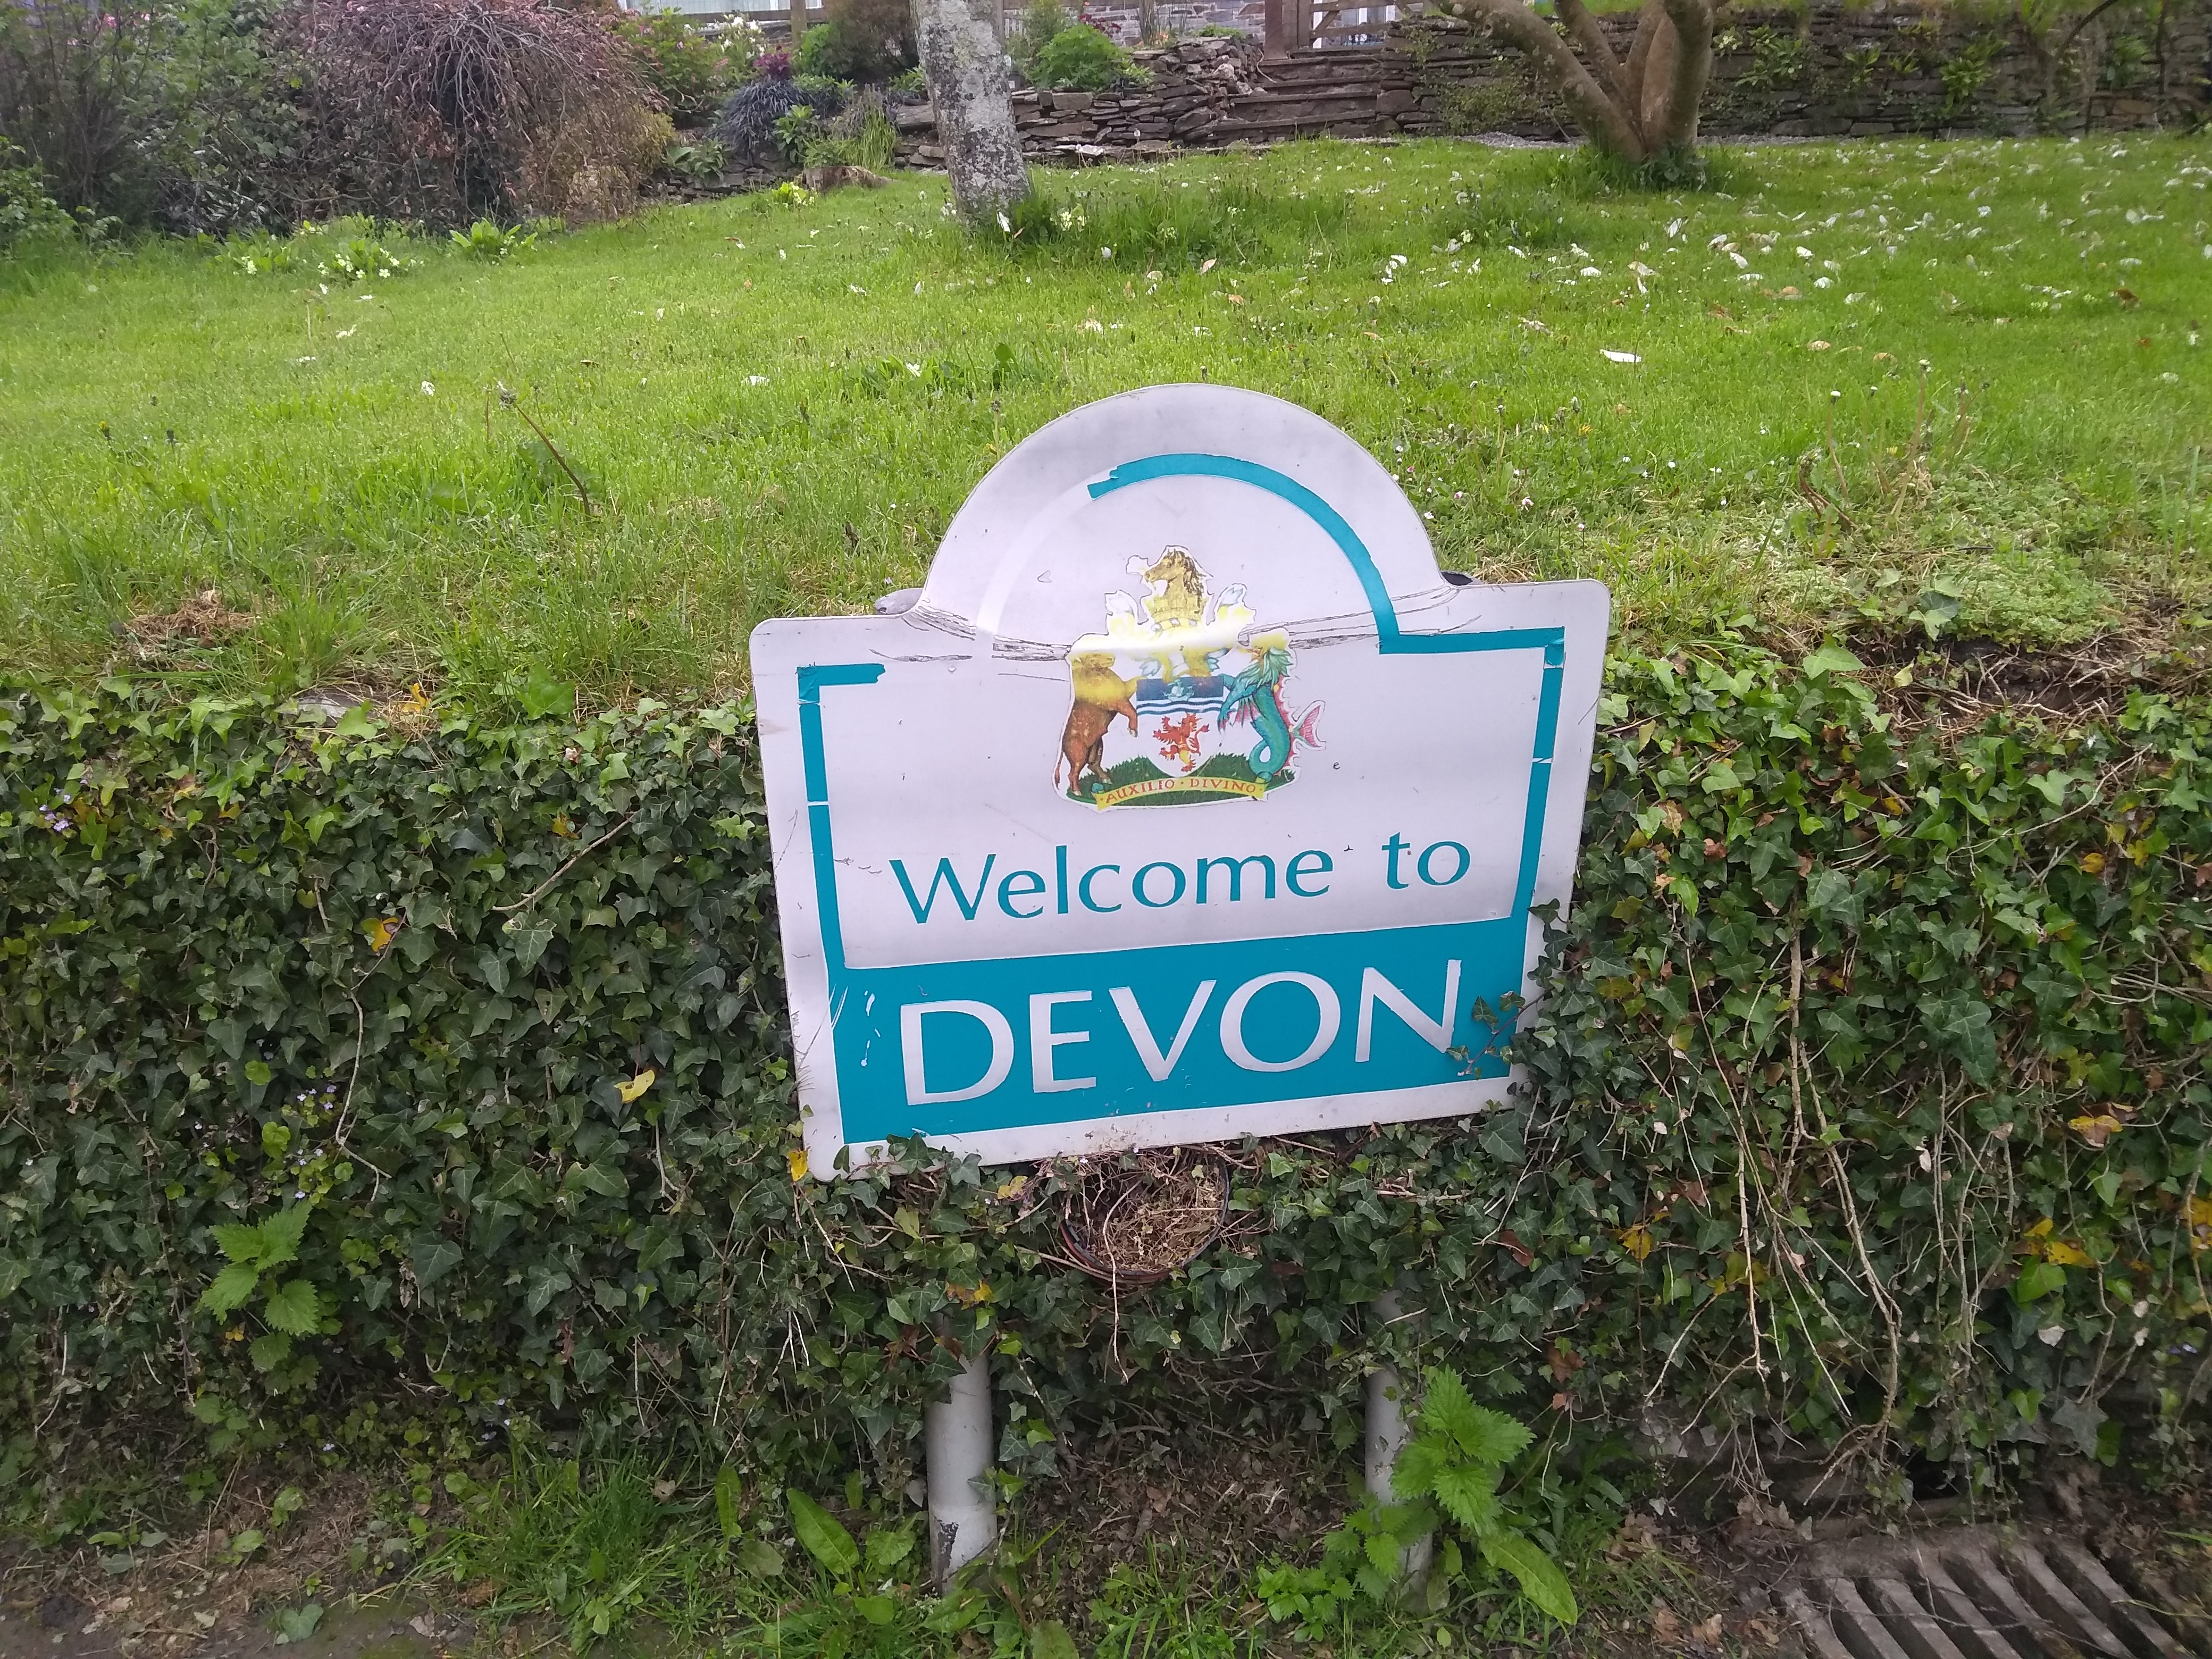 Devon sign